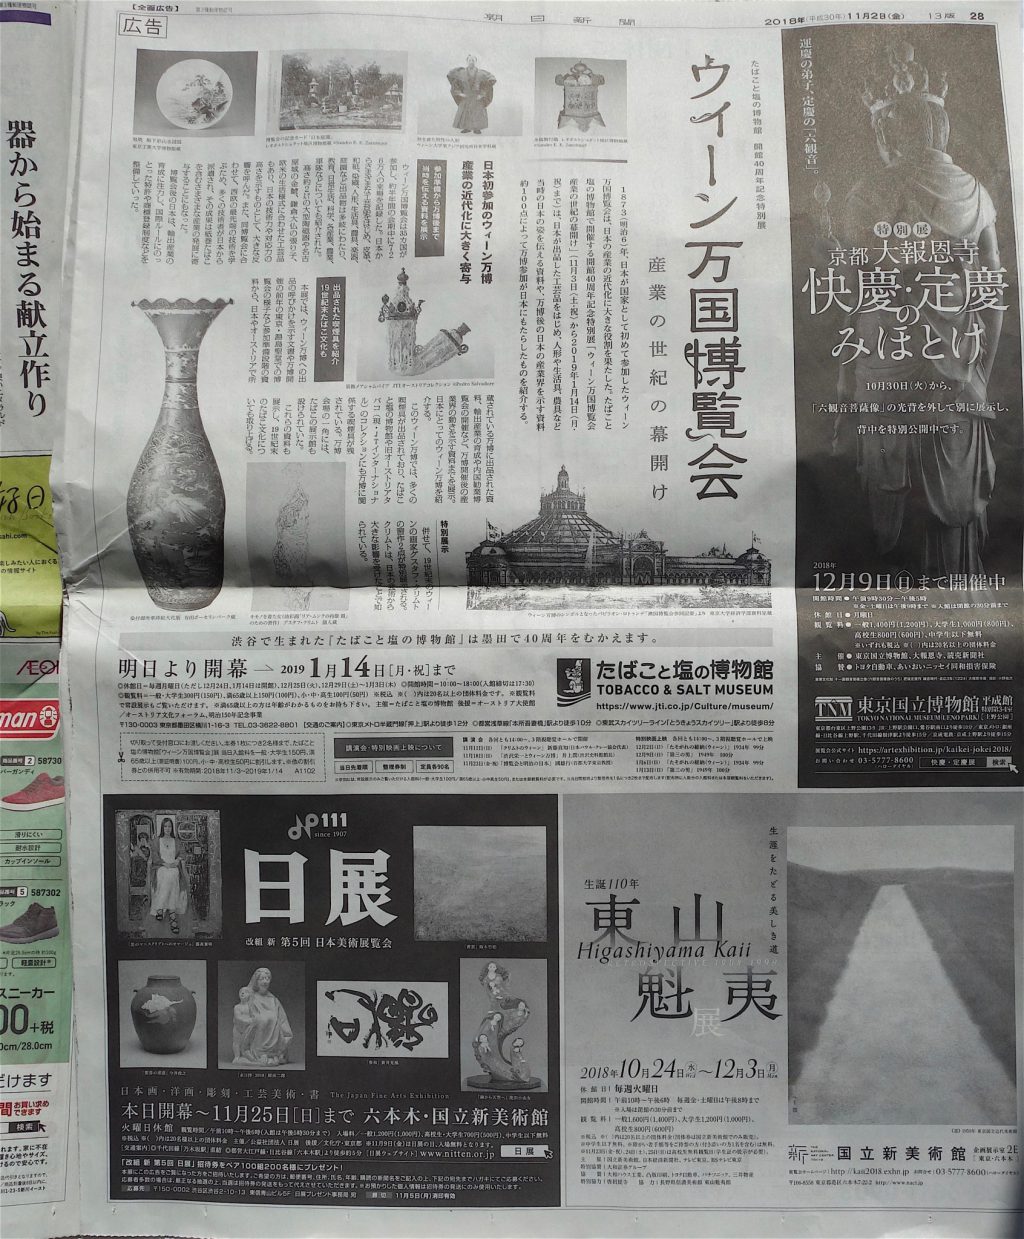 日展の一色広告 @ 朝日新聞2018年11月2日